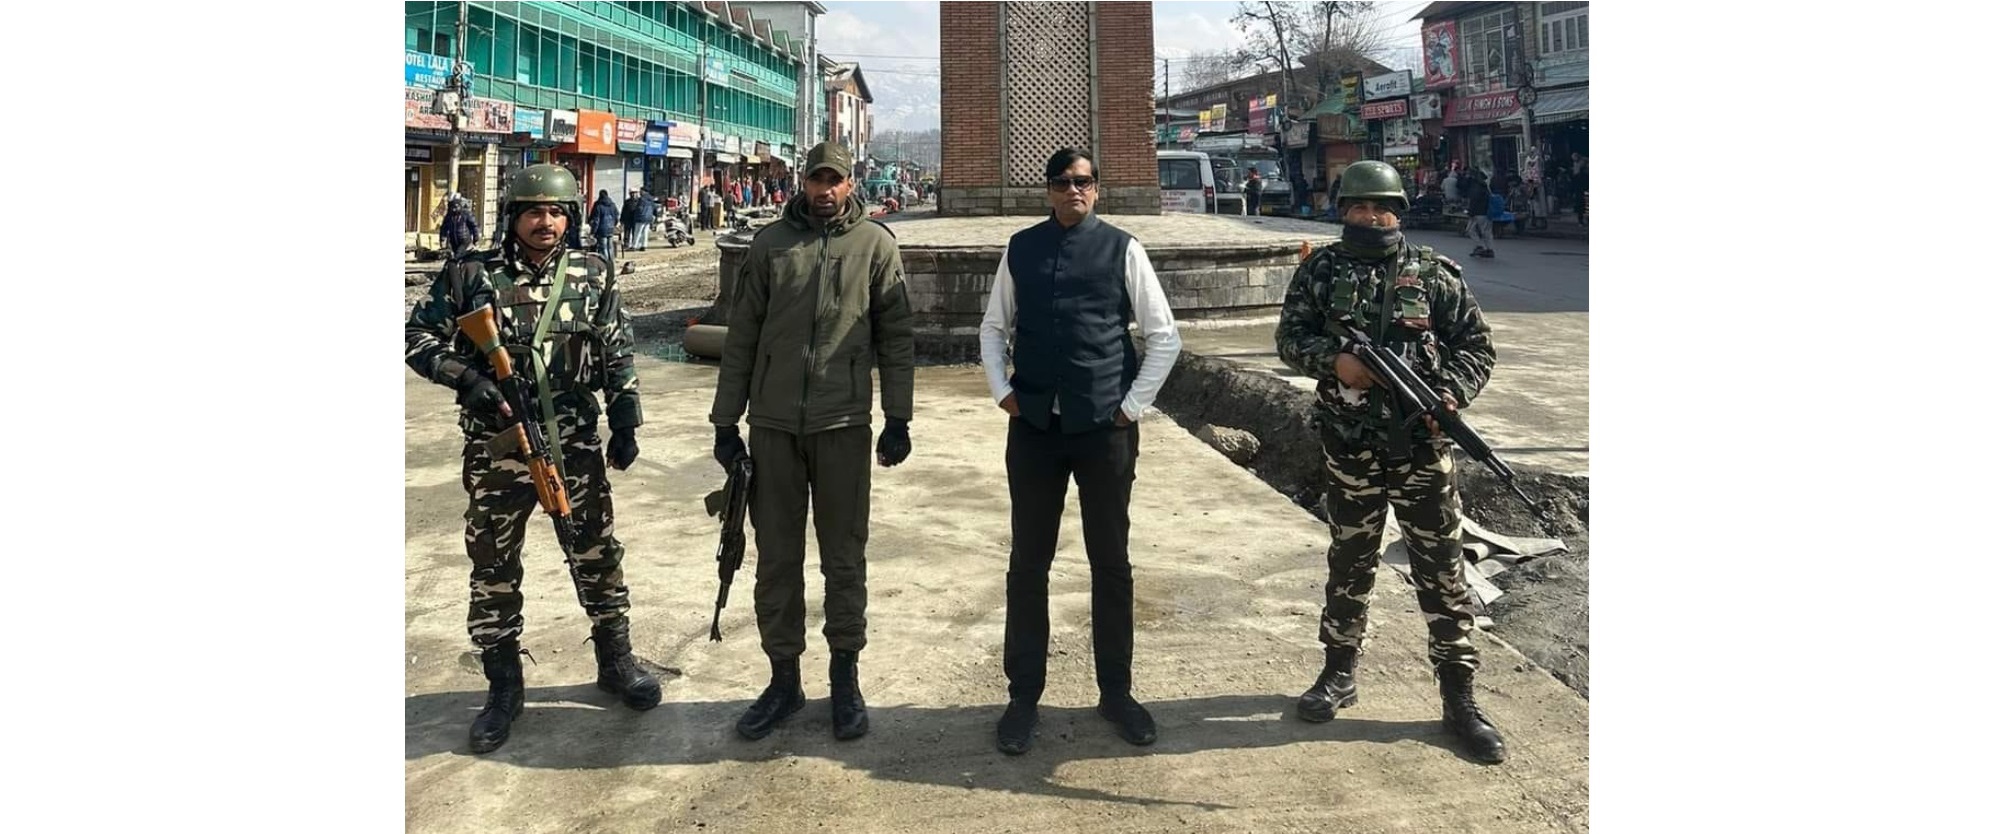 भाजपा से कथित संबंधों वाला ठग गिरफ़्तार, पीएमओ अधिकारी बताकर कई बार कश्मीर का दौरा कर चुका था